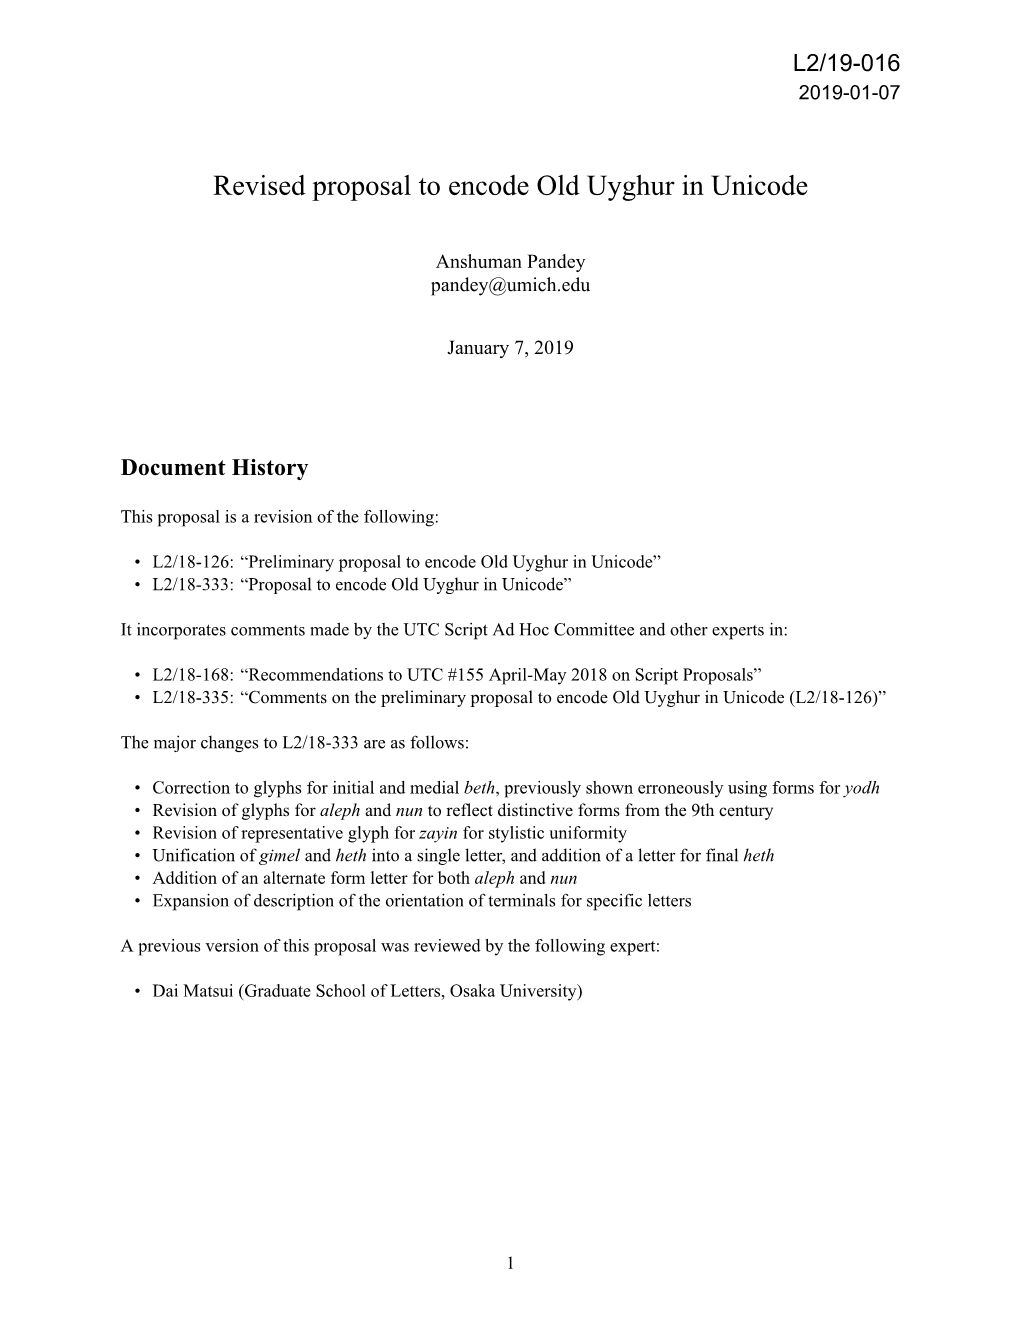 Revised Proposal to Encode Old Uyghur in Unicode